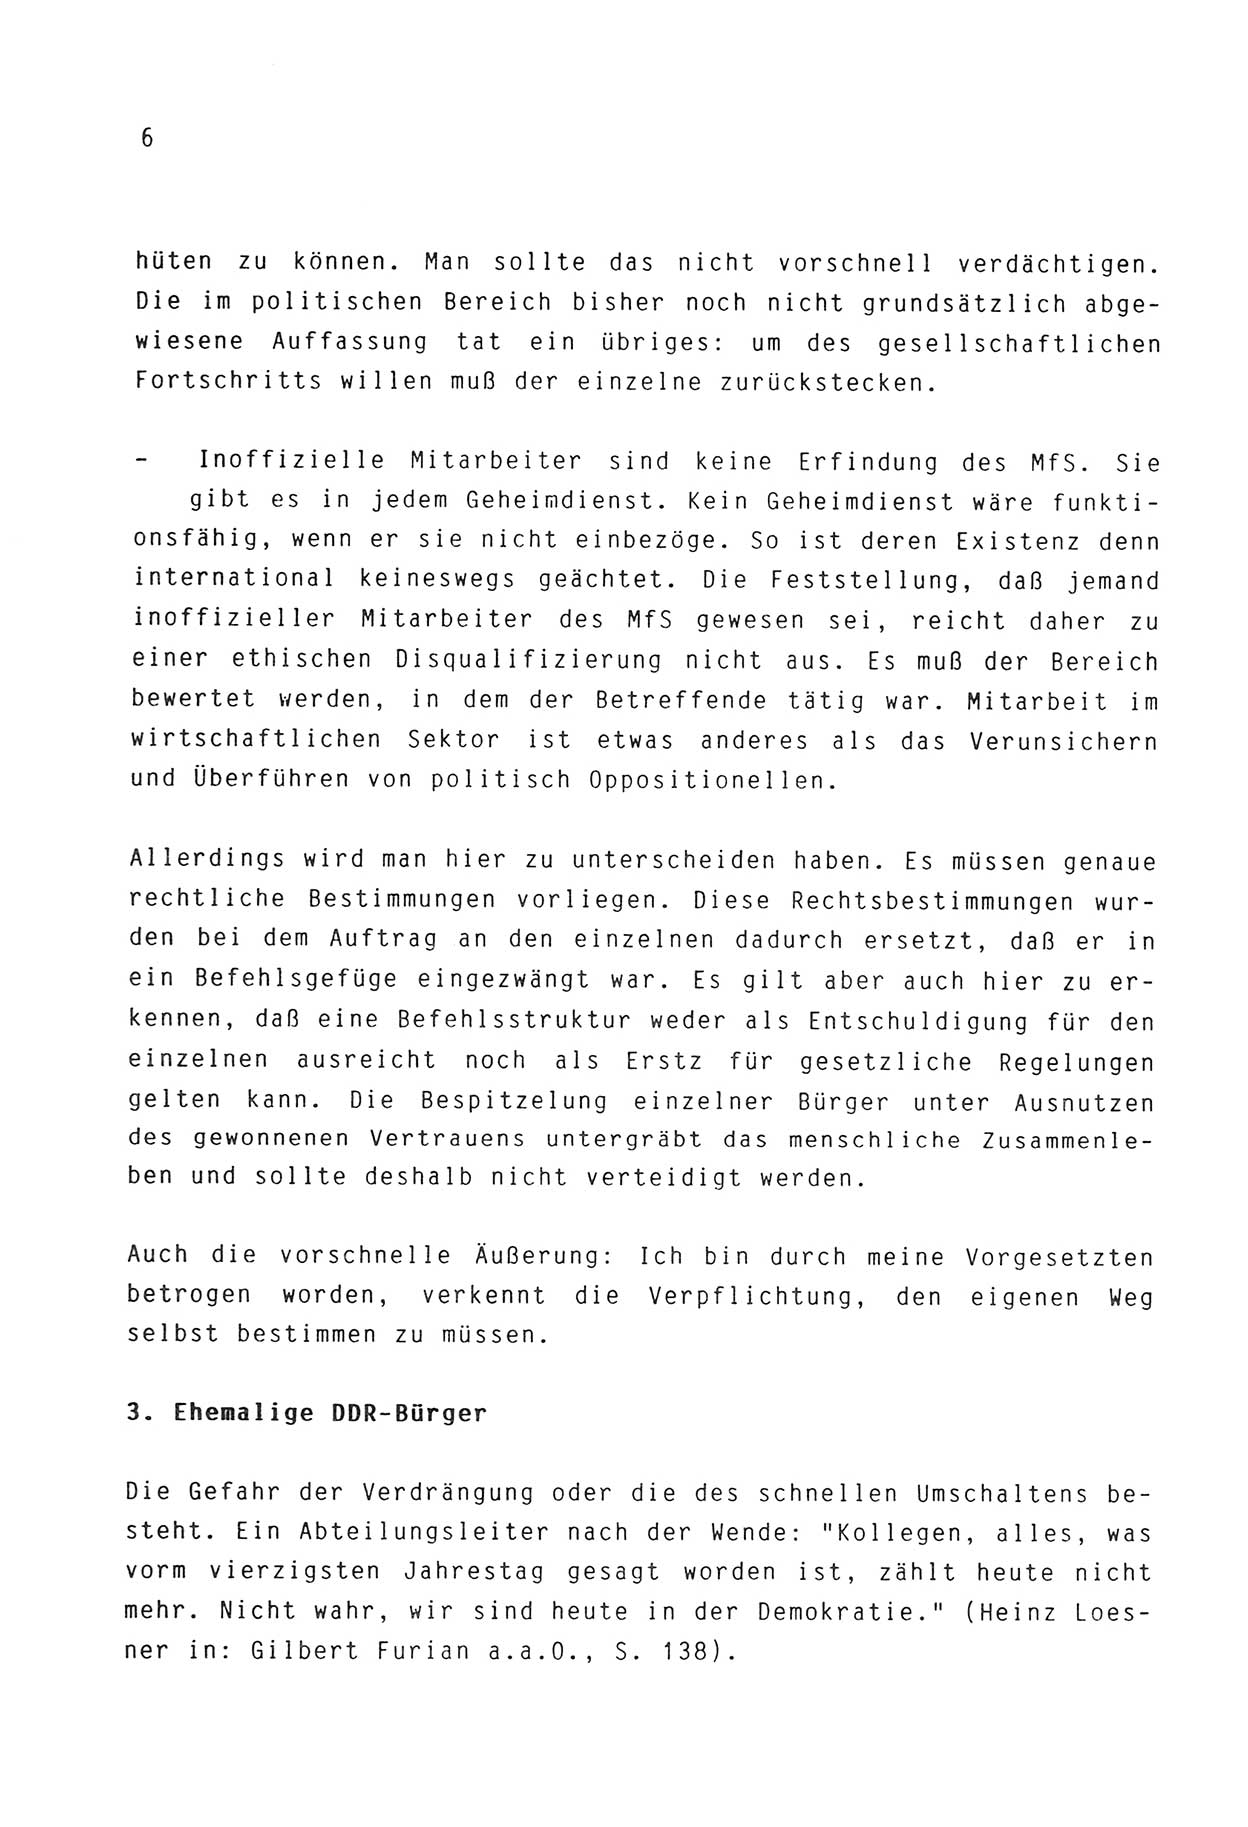 Zwie-Gespräch, Beiträge zur Aufarbeitung der Stasi-Vergangenheit [Deutsche Demokratische Republik (DDR)], Ausgabe Nr. 3, Berlin 1991, Seite 6 (Zwie-Gespr. Ausg. 3 1991, S. 6)